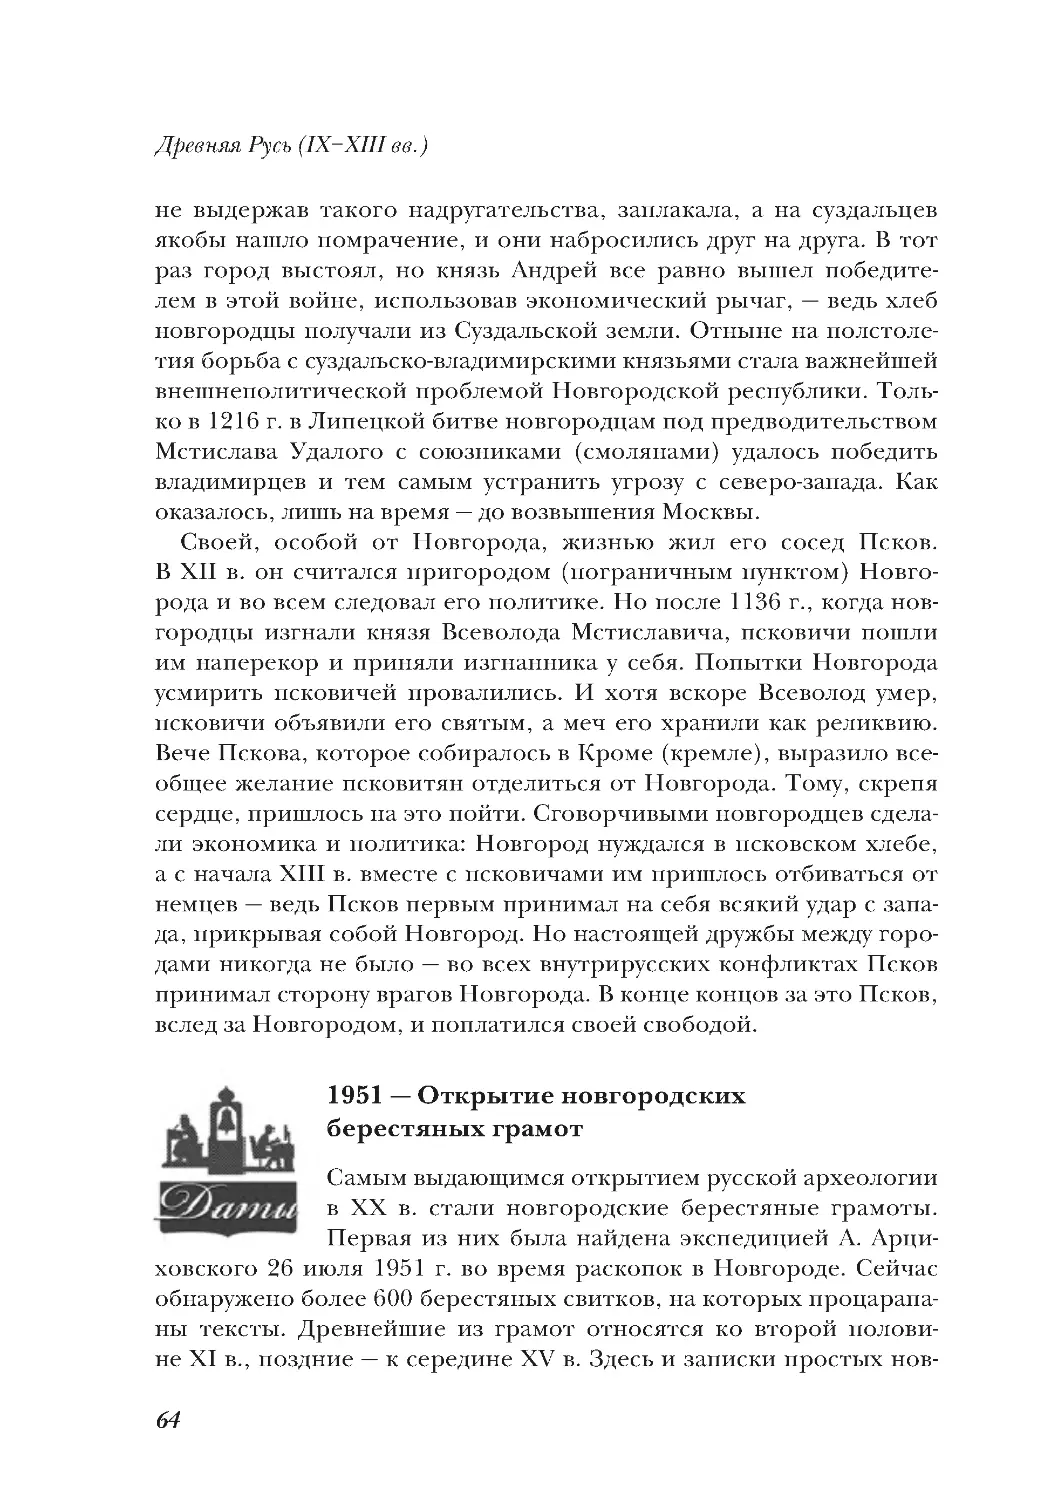 1951 — Открытие новгородских берестяных грамот